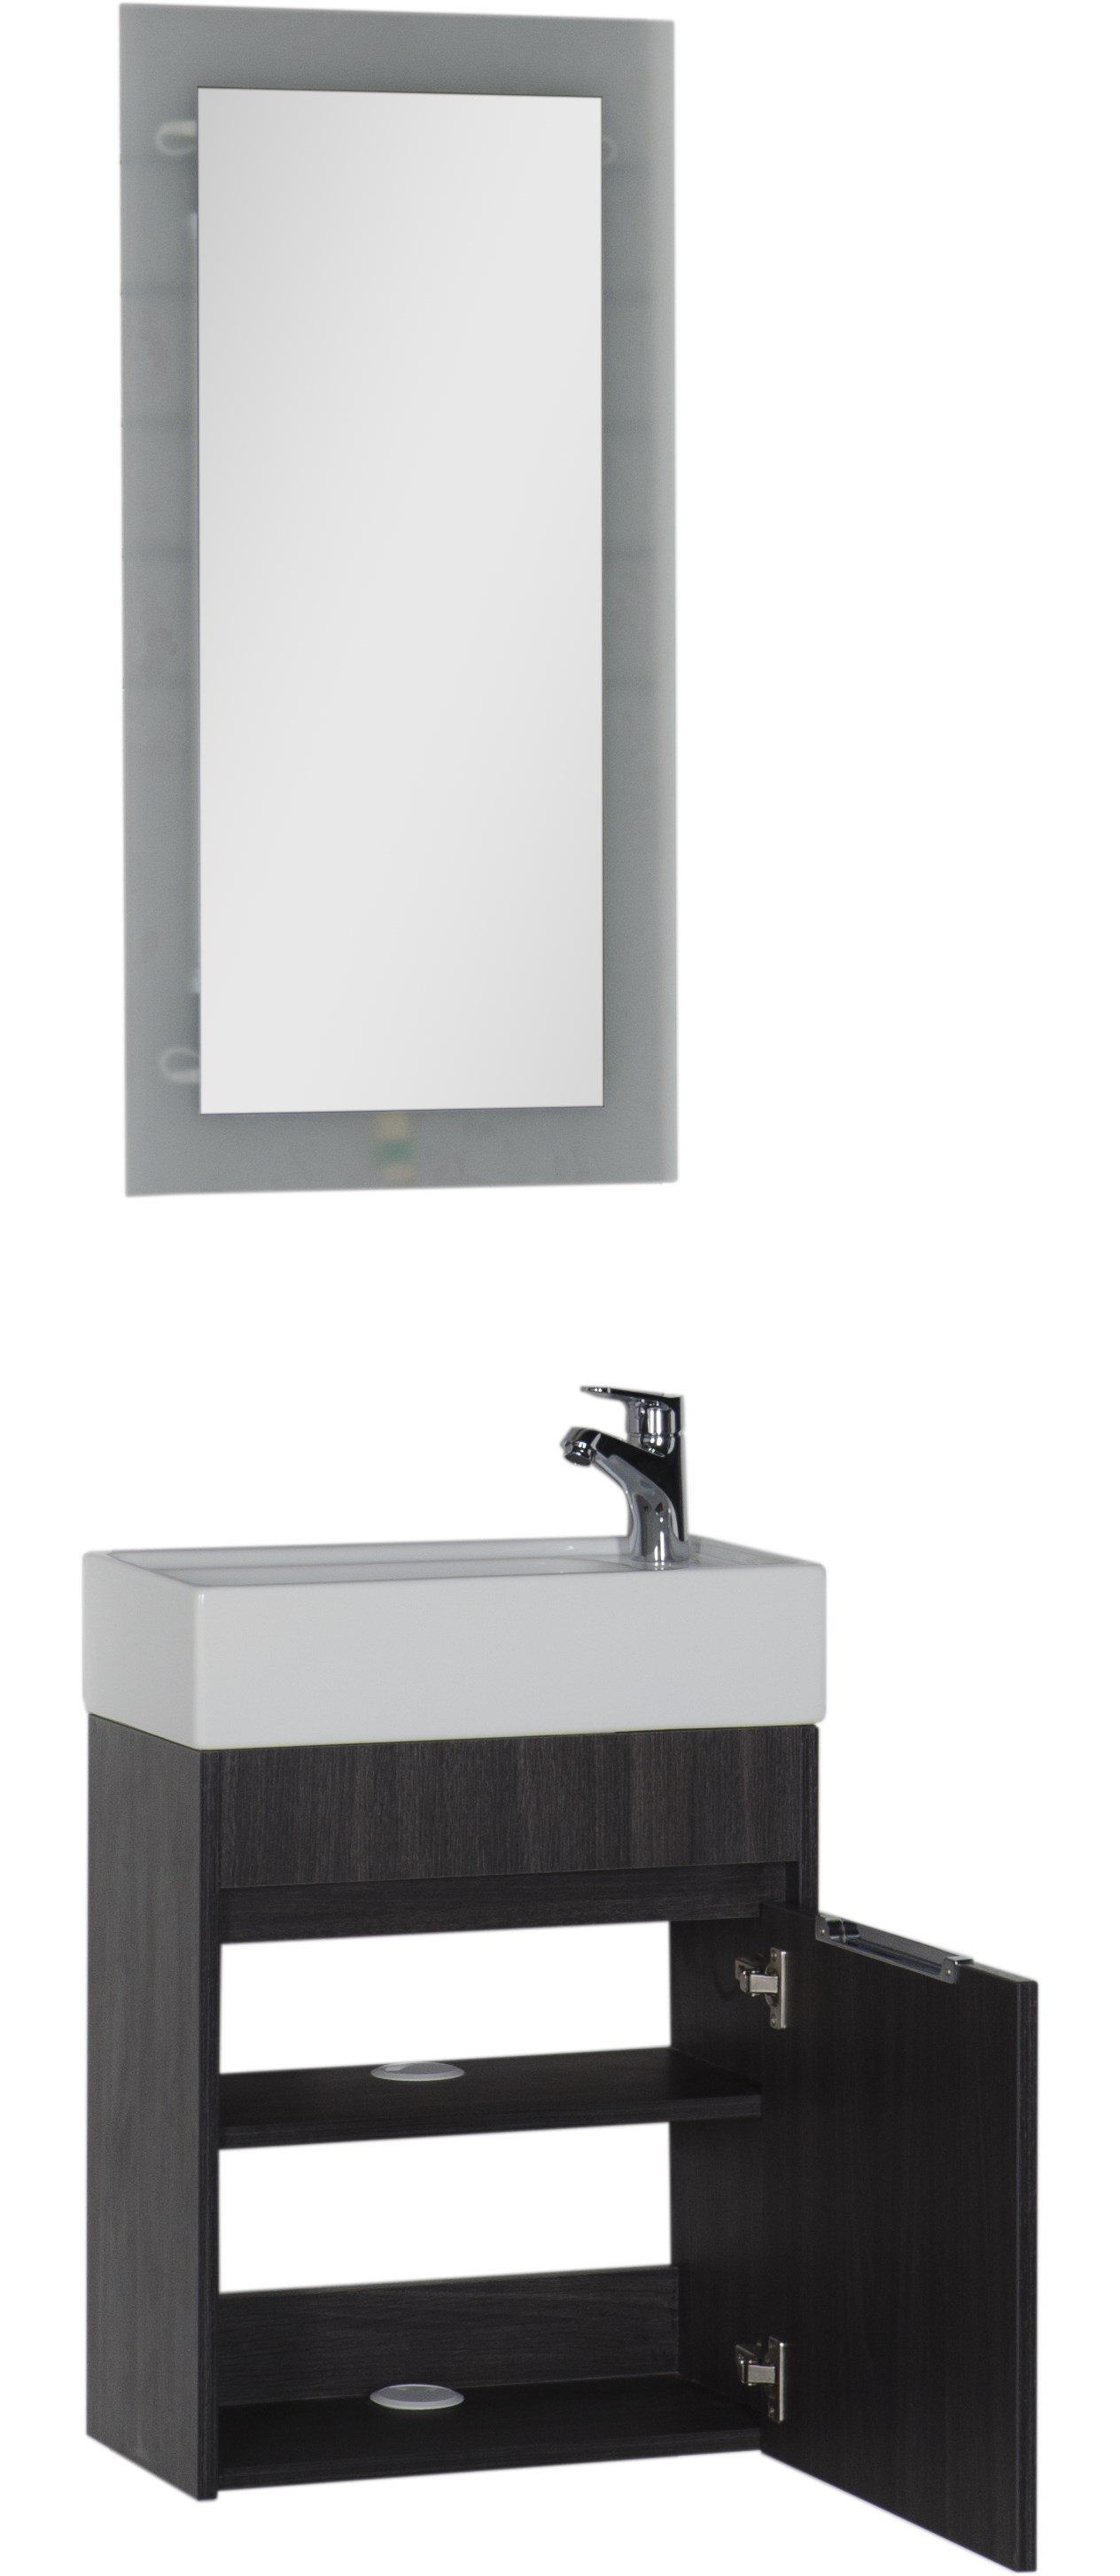 Мебель для ванной Aquanet Лидс 50 см подвесная 1 дверца, эвкалипт мистери, цвет черный 00183170 - фото 3